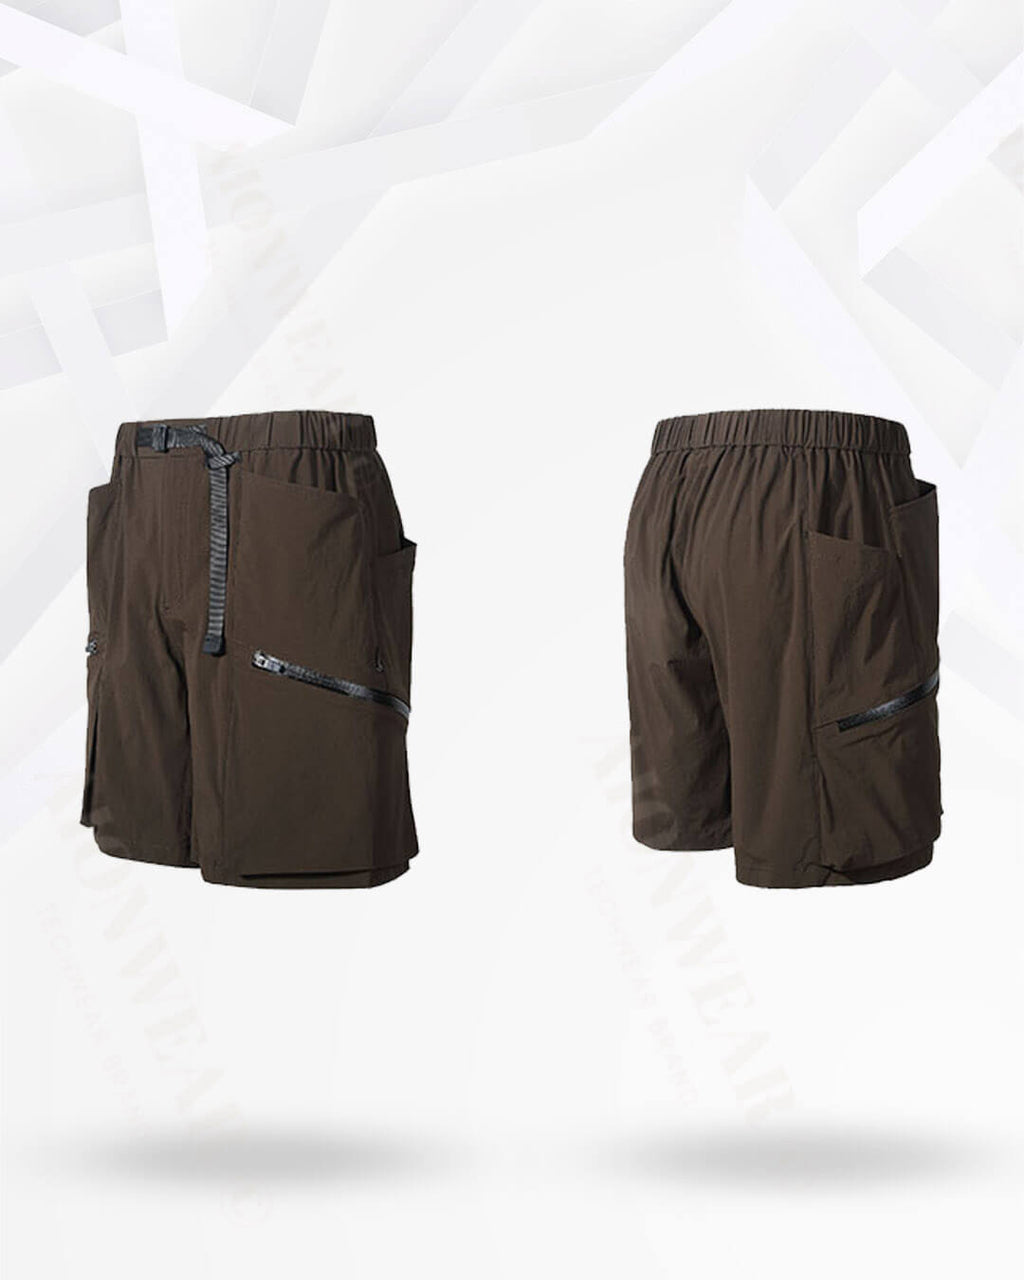 Maroon Nylon Cargo shorts